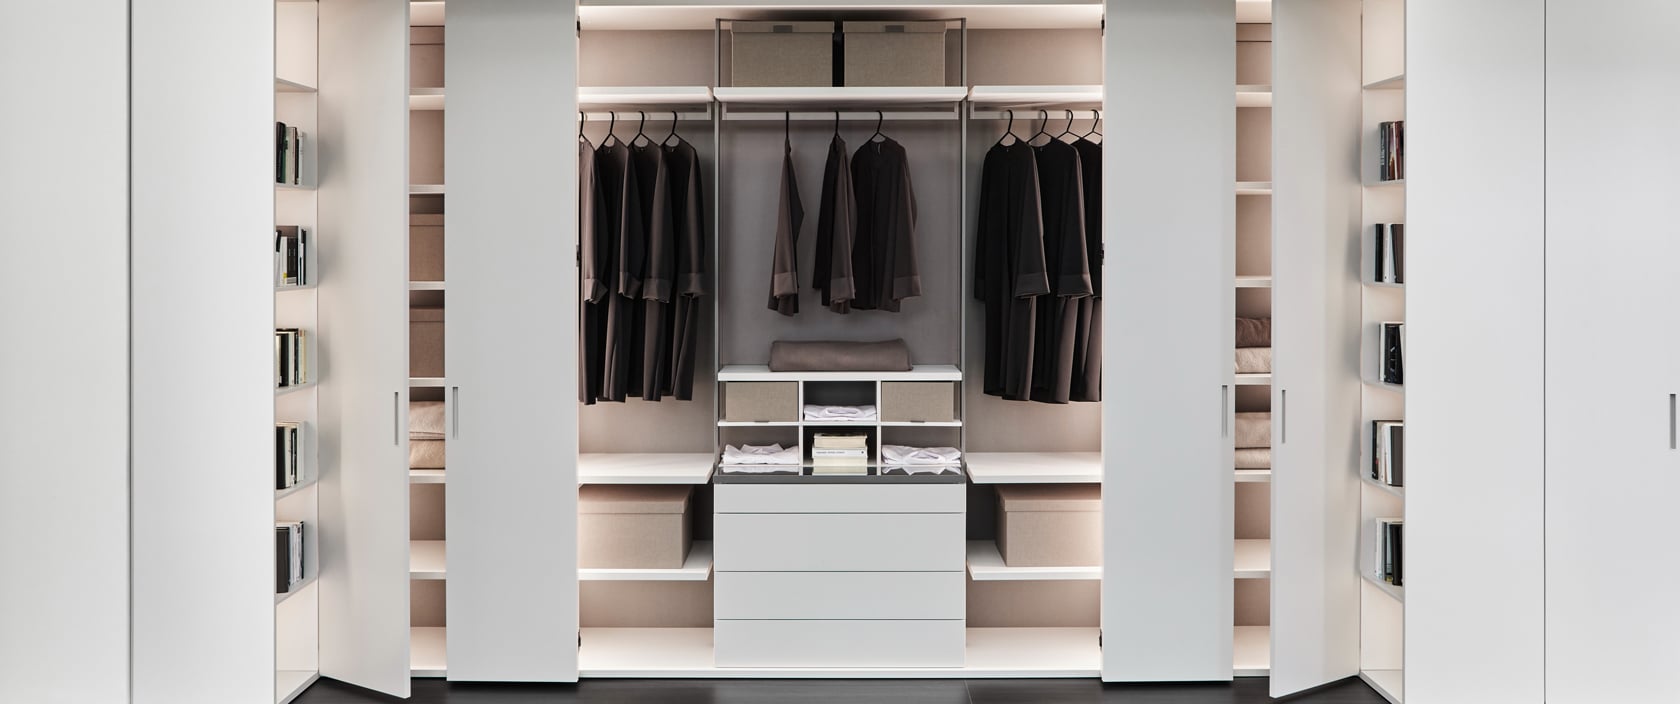 Modern Luxury  Luxury closets design, Walk in closet design